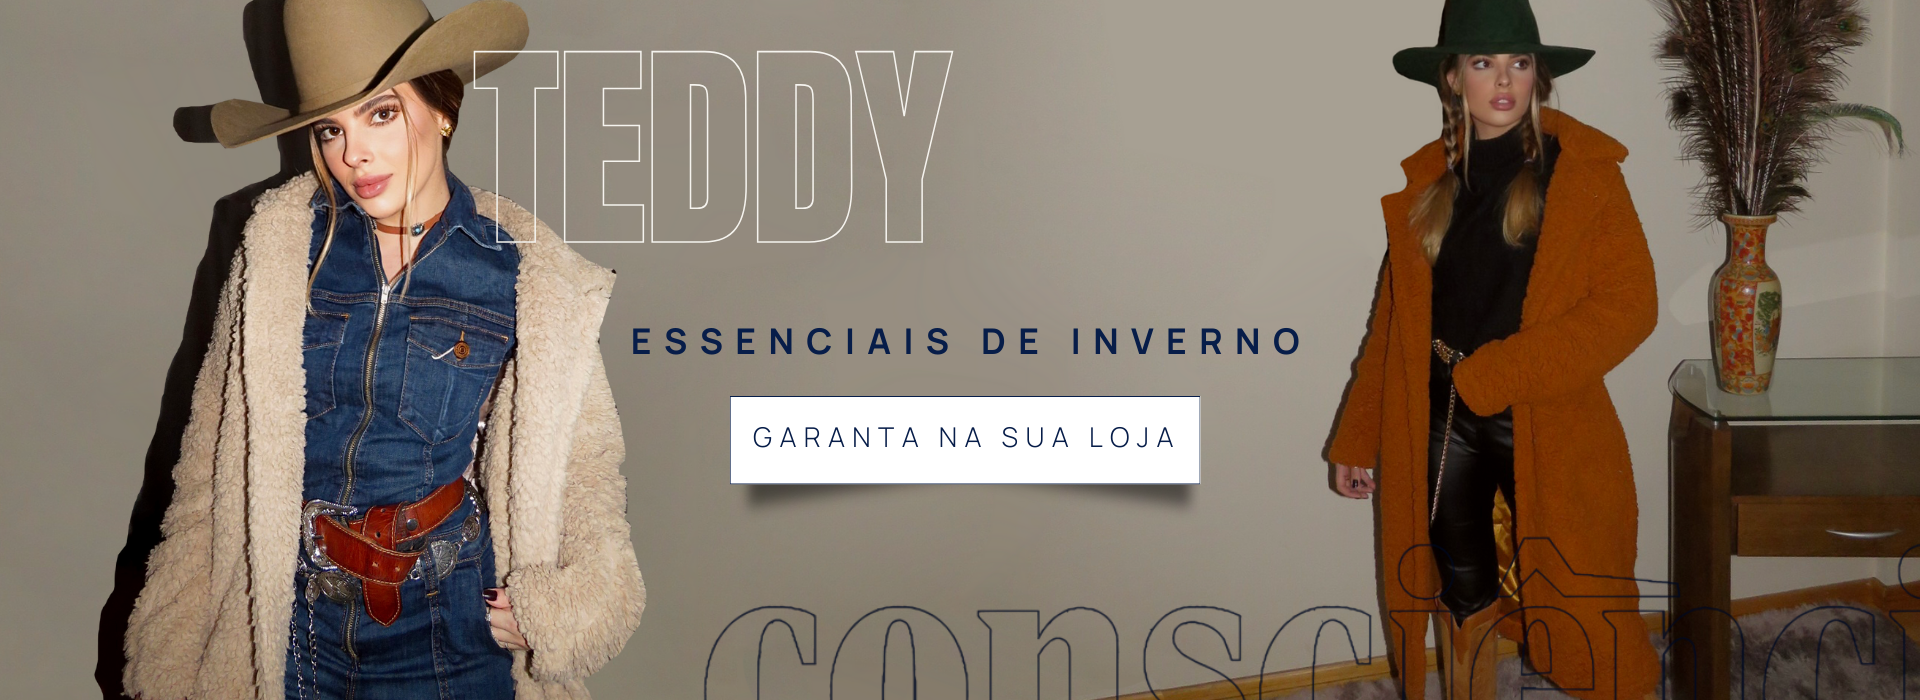 TEDDY: ESSENCIAIS DE INVERNO